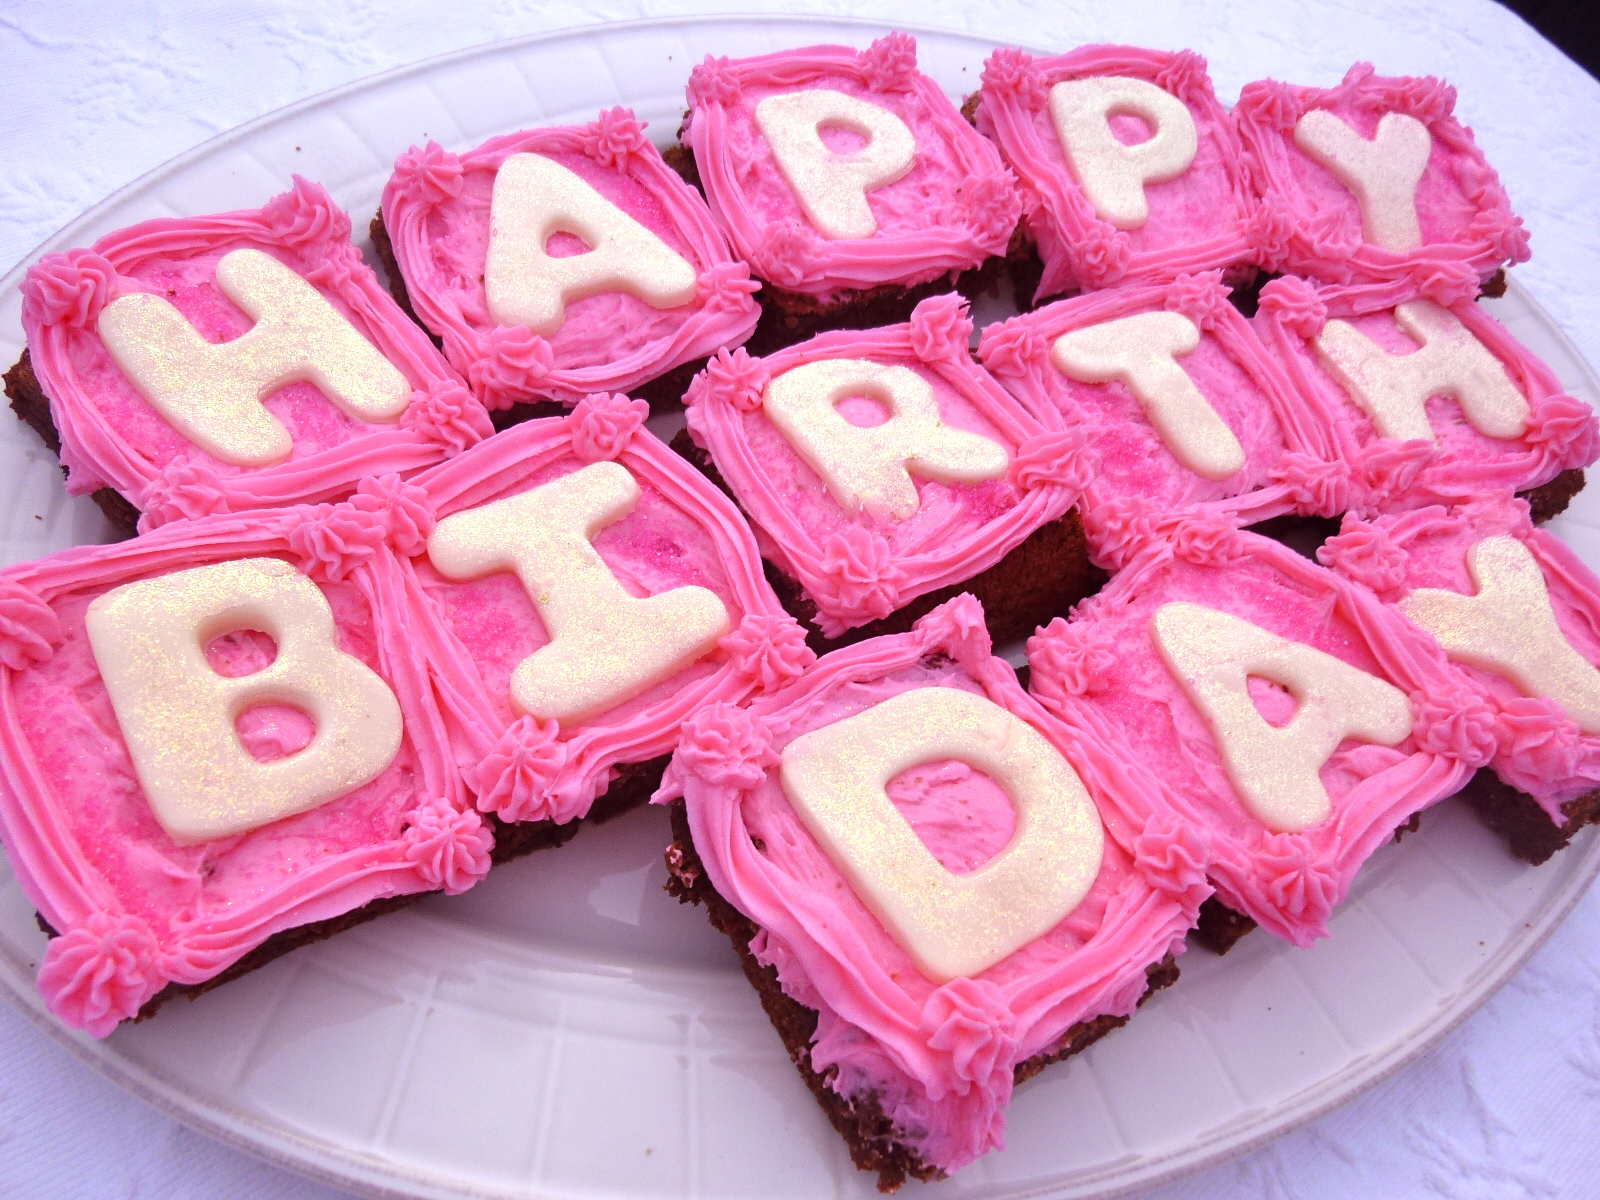 http://2.bp.blogspot.com/-rEKYRVIbI60/Tx9NkKBx2yI/AAAAAAAAICM/6FXTh8aur_g/s1600/Happy-Birthday-Brownies-With-Pink-Raspberry-Buttercream.JPG